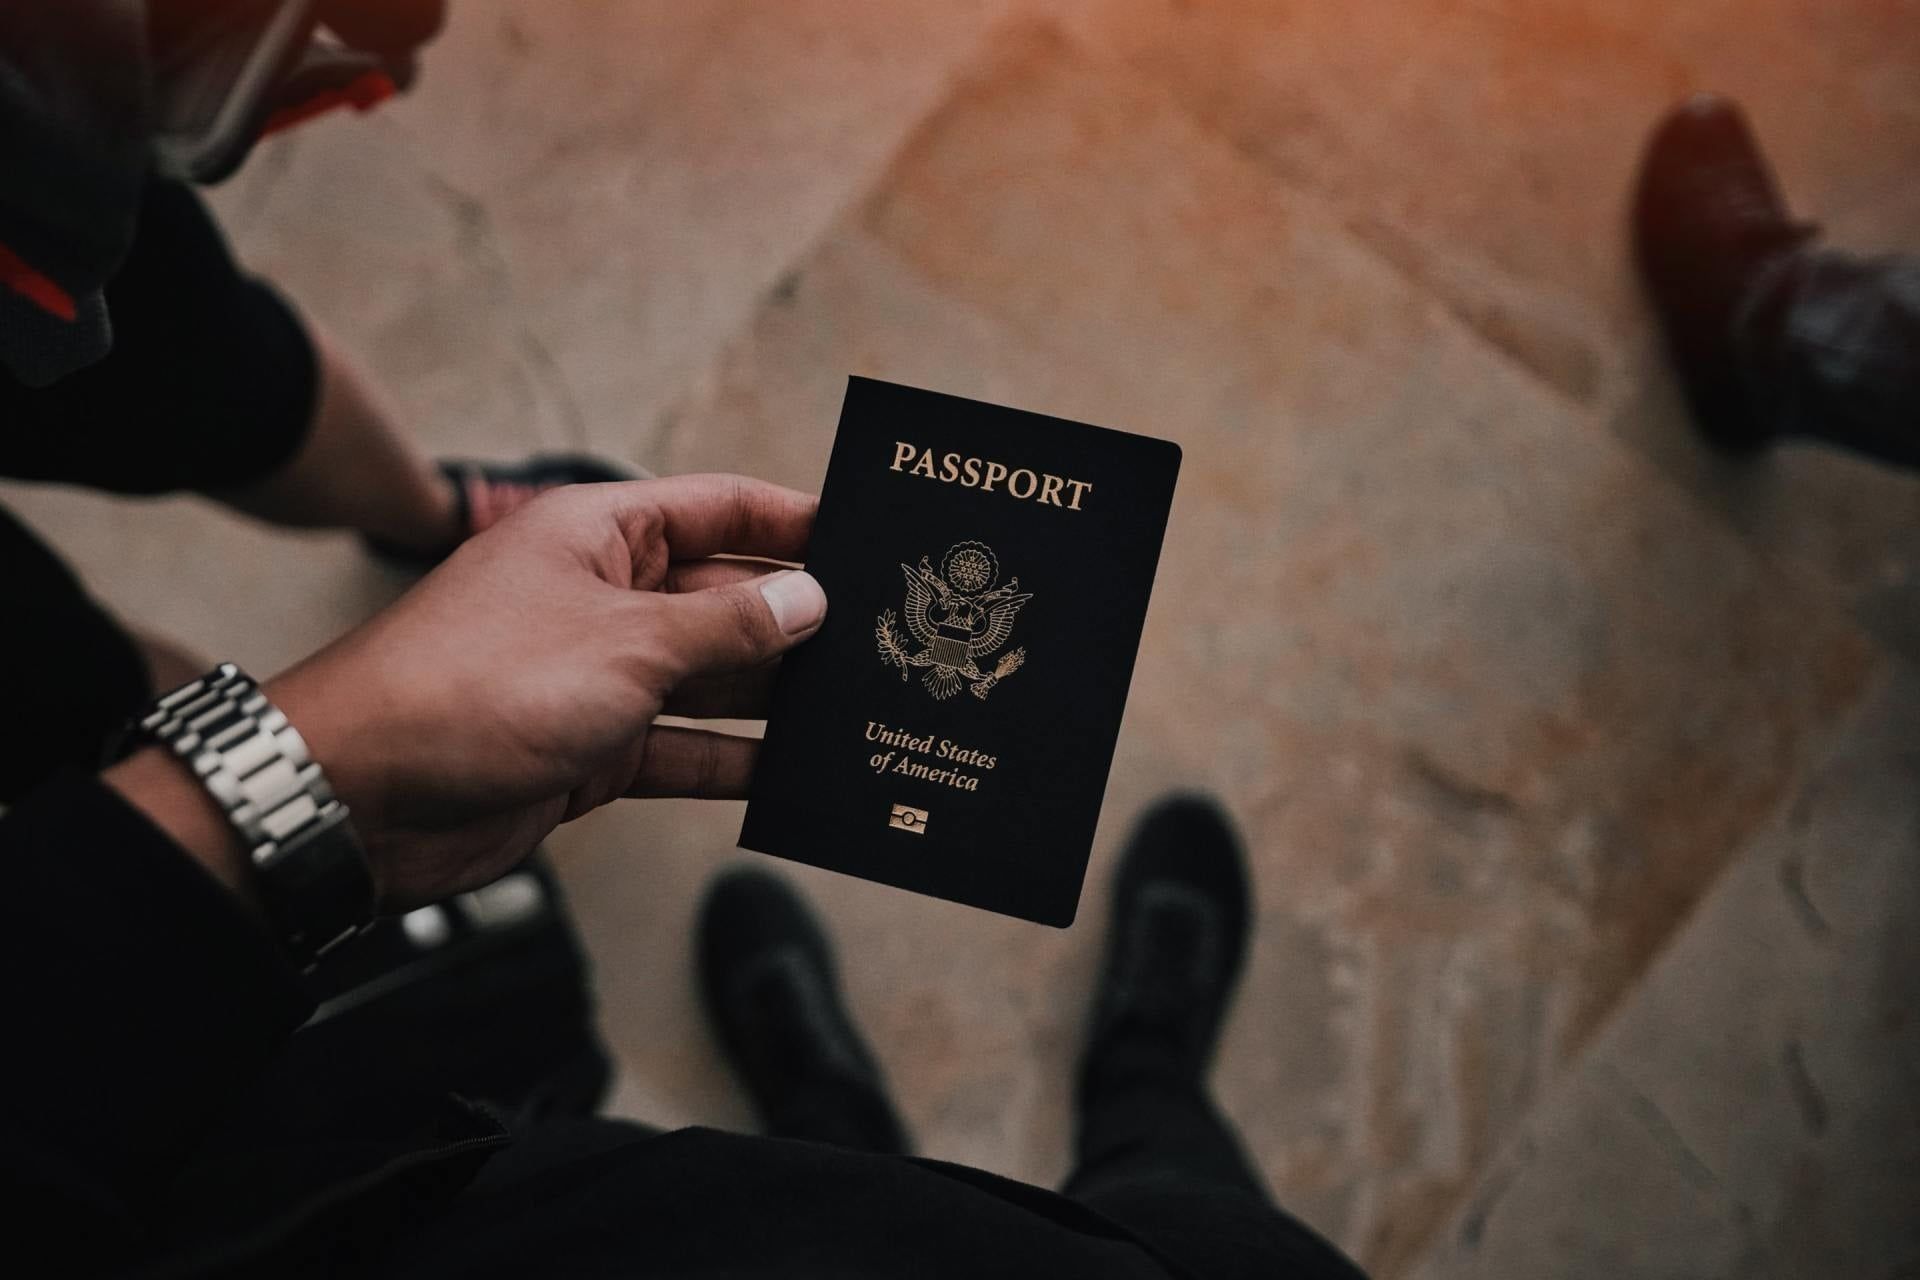 El pasaporte de un cliente estadounidense que quiere empezar el proceso de residencia legal en España. Foto tomada en Santa Cruz de Tenerife.